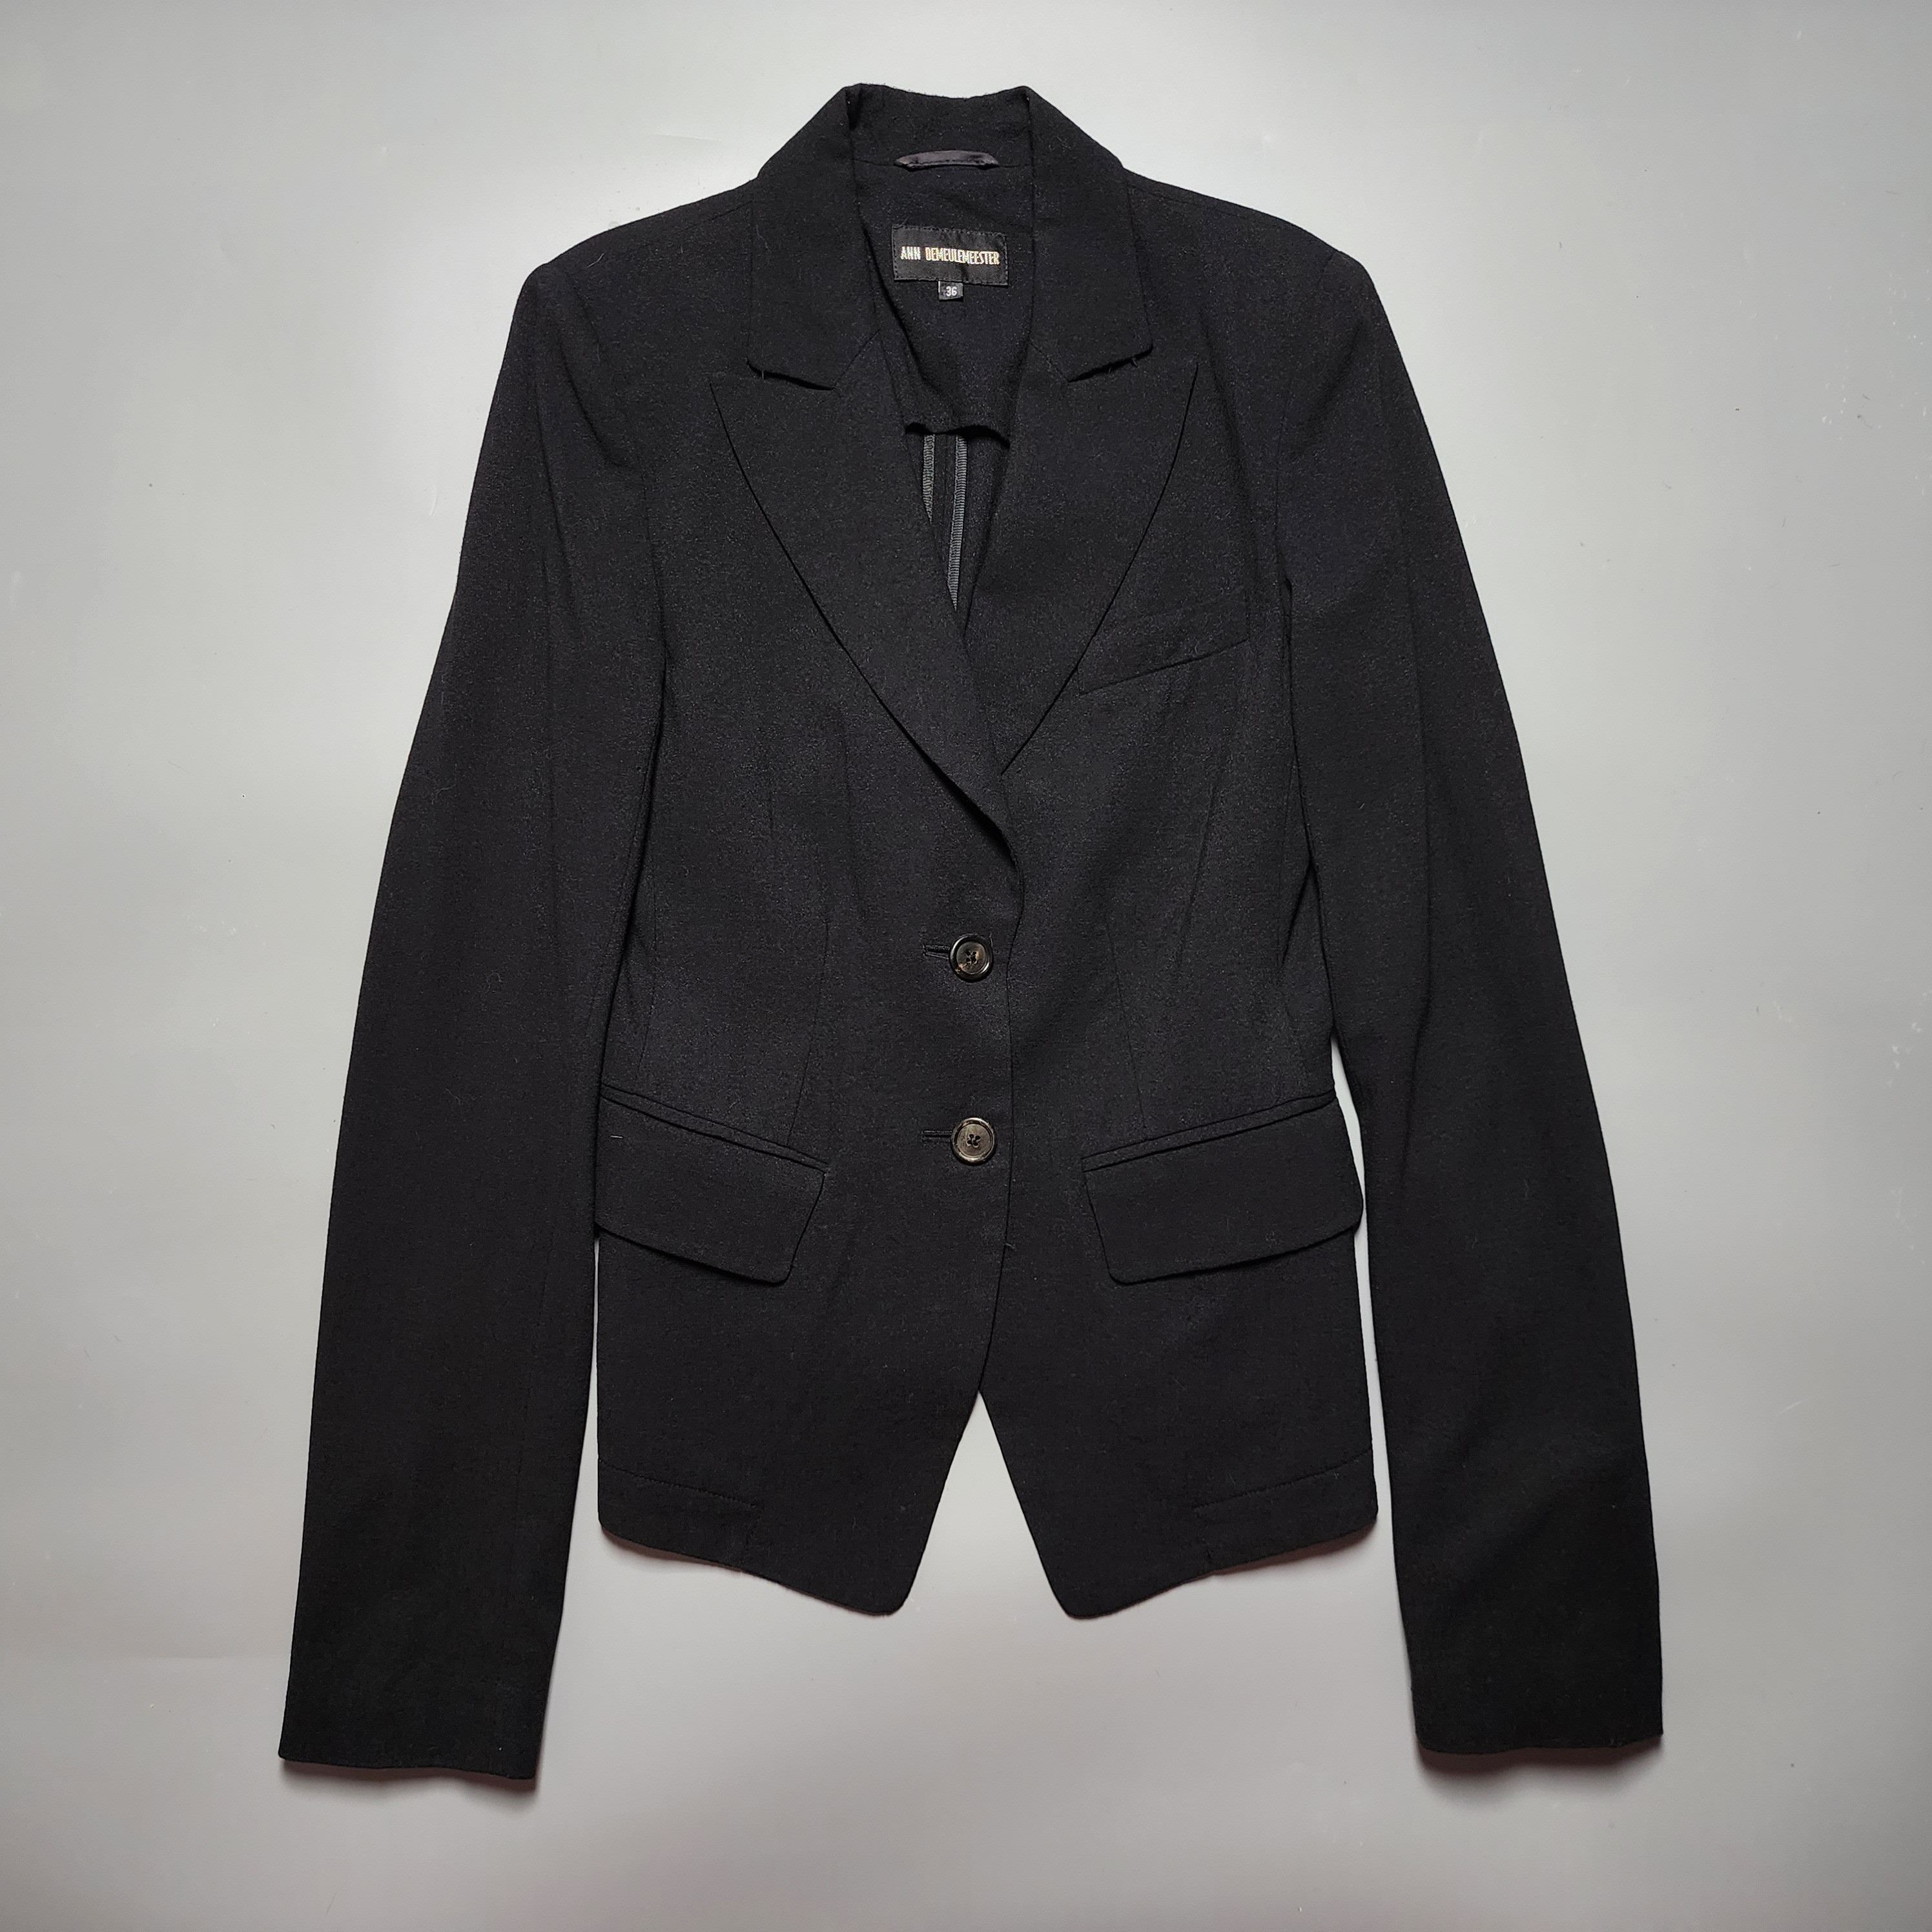 Ann Demeulemeester - Archive Fleece Wool Blazer Jacket - 1